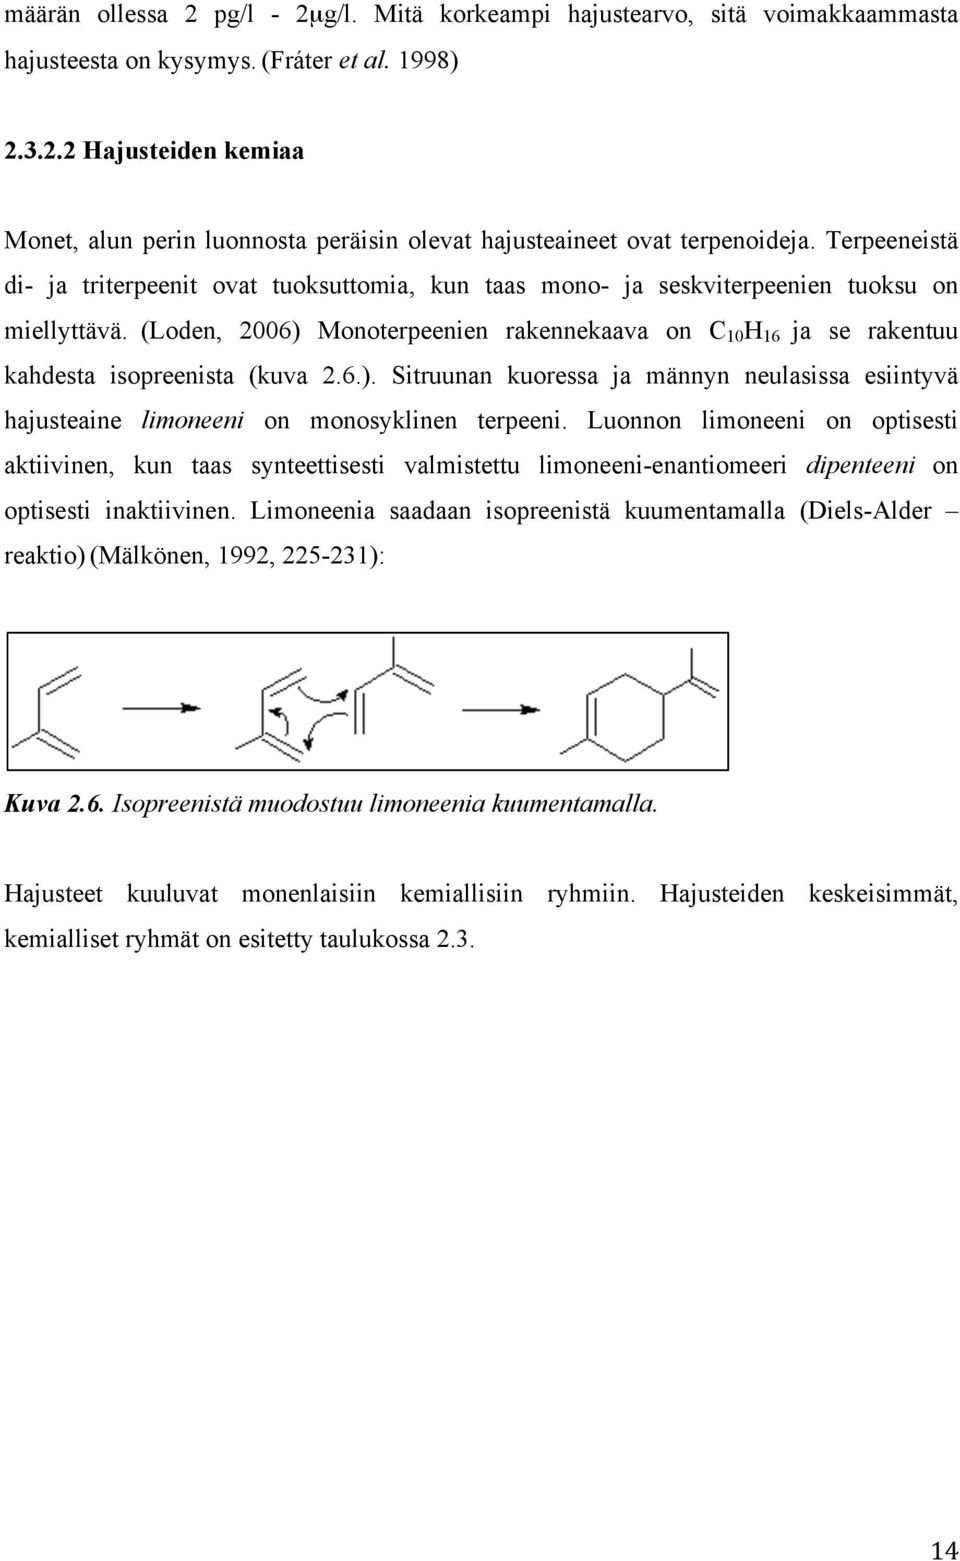 (Loden, 2006) Monoterpeenien rakennekaava on C 10 H 16 ja se rakentuu kahdesta isopreenista (kuva 2.6.). Sitruunan kuoressa ja männyn neulasissa esiintyvä hajusteaine limoneeni on monosyklinen terpeeni.